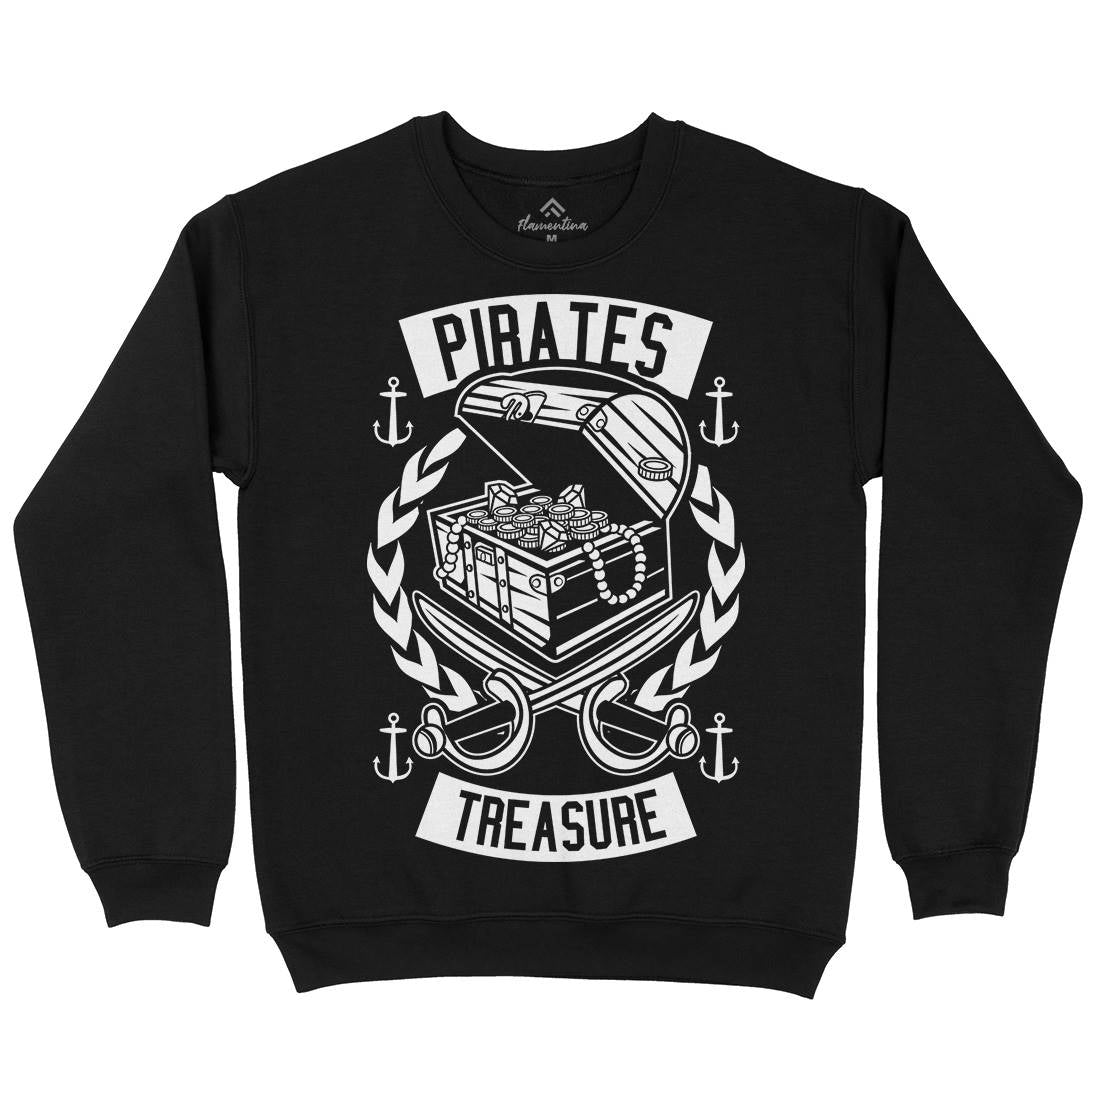 Pirates Treasure Kids Crew Neck Sweatshirt Navy B600